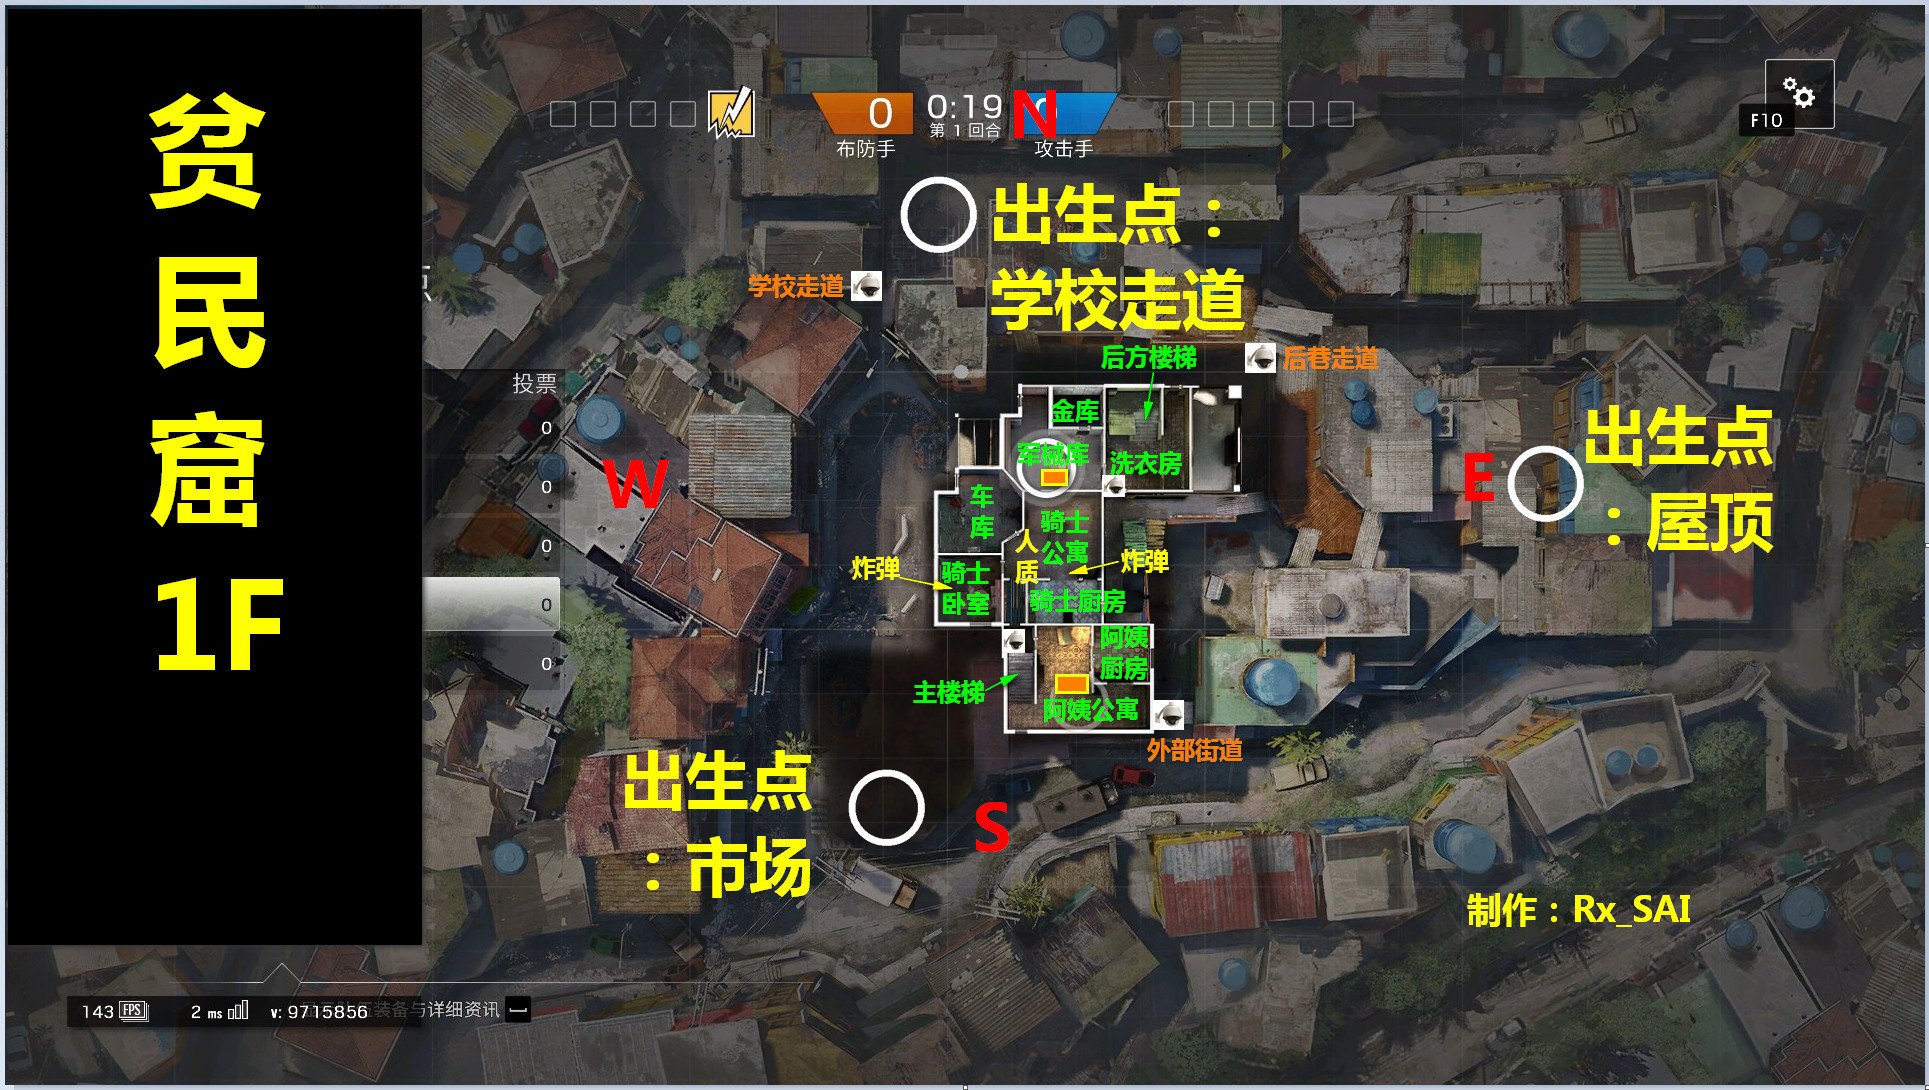 彩虹六号:围攻地图攻略 贫民窟地图摄像头点位一览